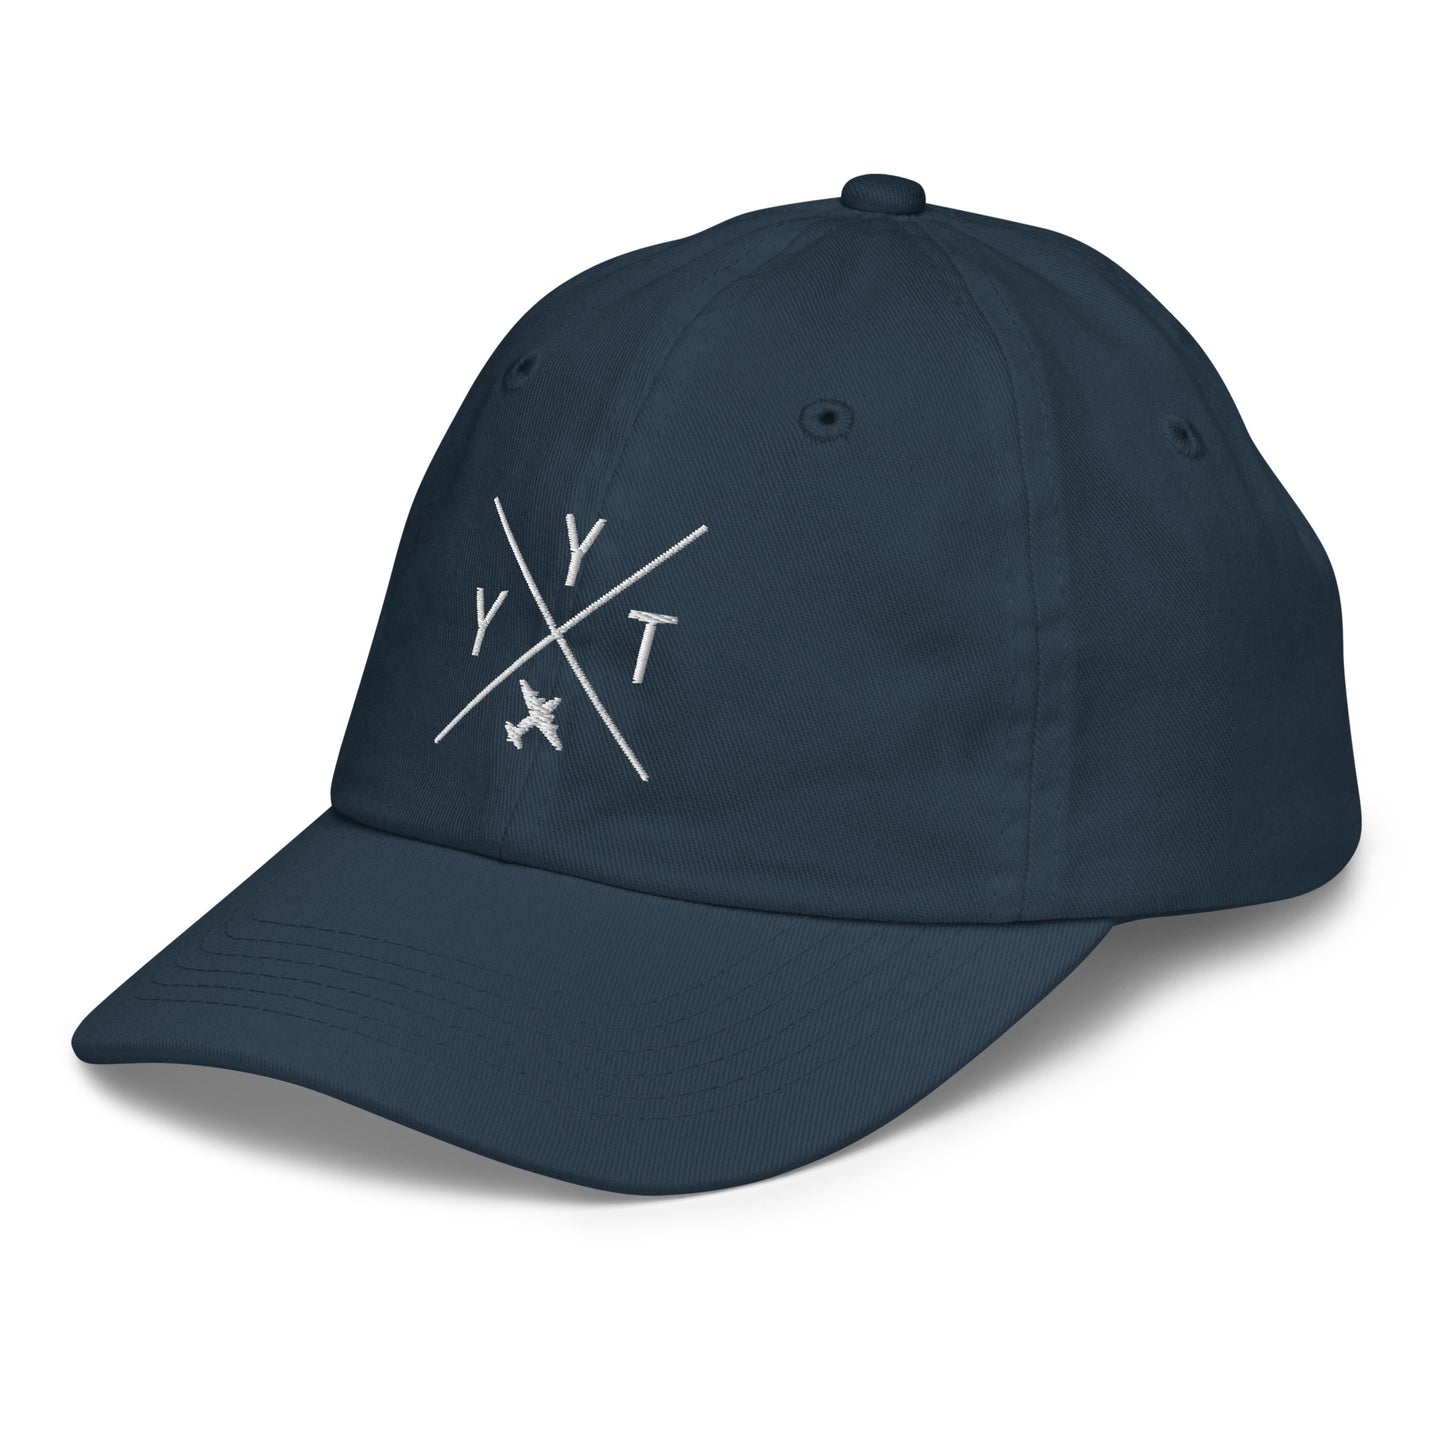 Crossed-X Kid's Baseball Cap - White • YYT St. John's • YHM Designs - Image 16